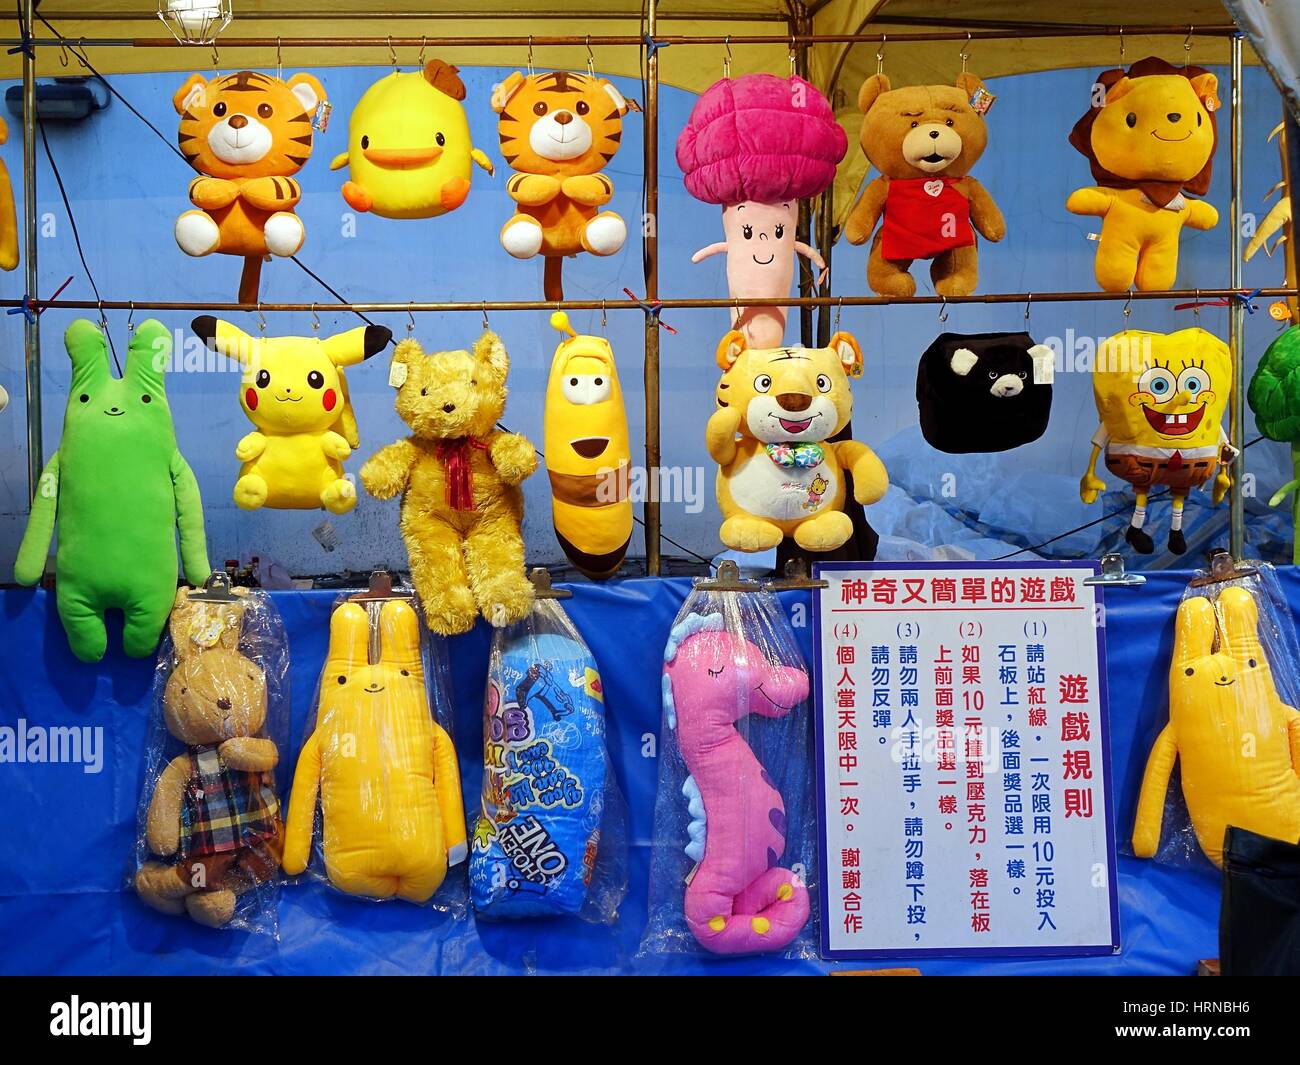 KAOHSIUNG, TAIWAN -- 13 février 2016 : des animaux en peluche et les jouets sont offerts comme prix lors d'un jeu d'adresse au cours de la Fête des lanternes 2016. Banque D'Images